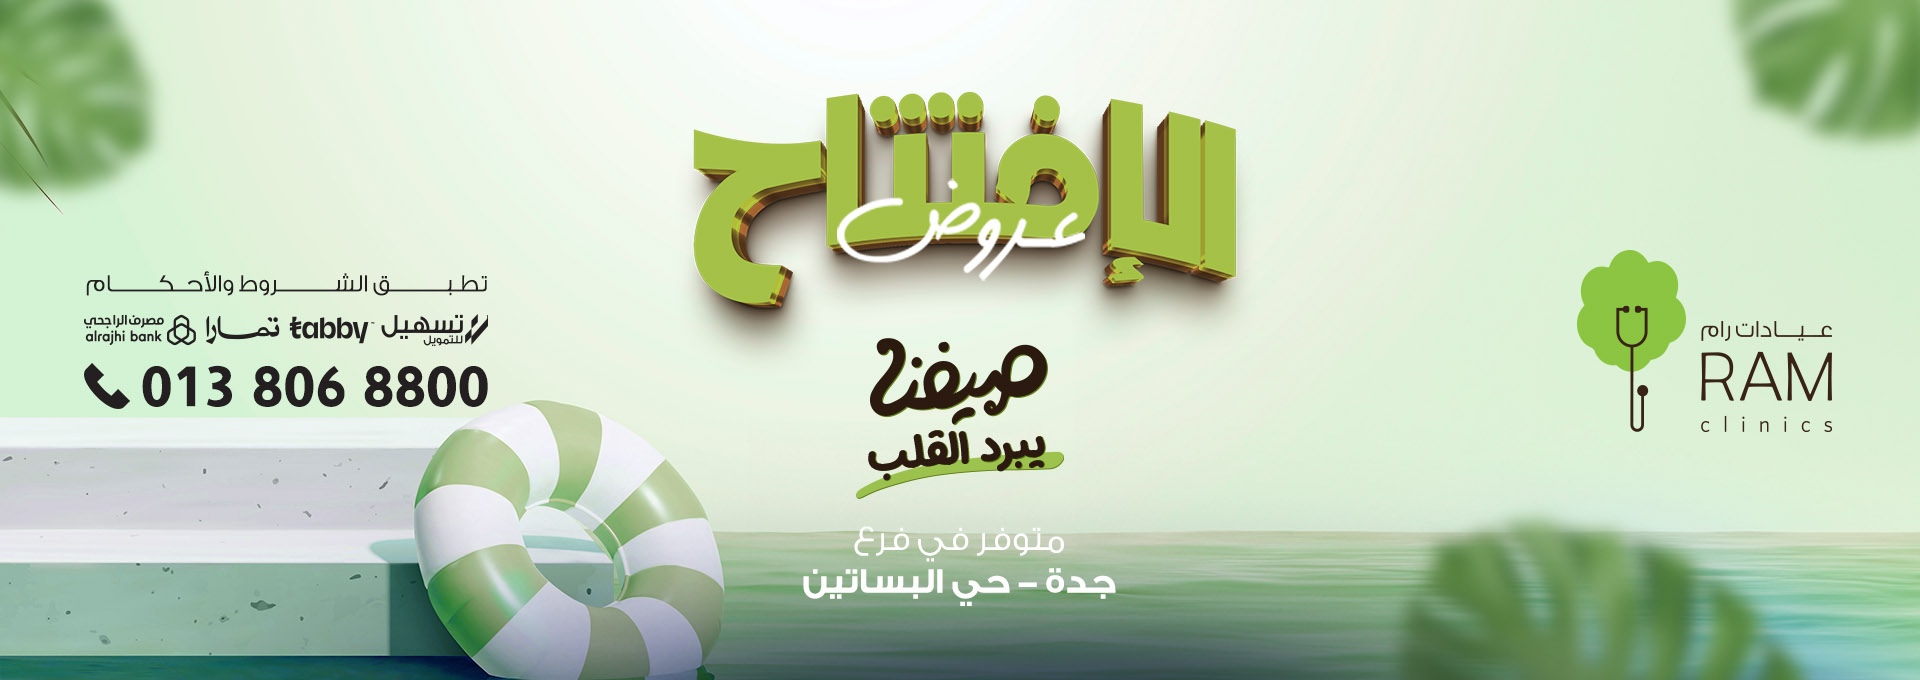 Opening offers - Jeddah Al-Basateen